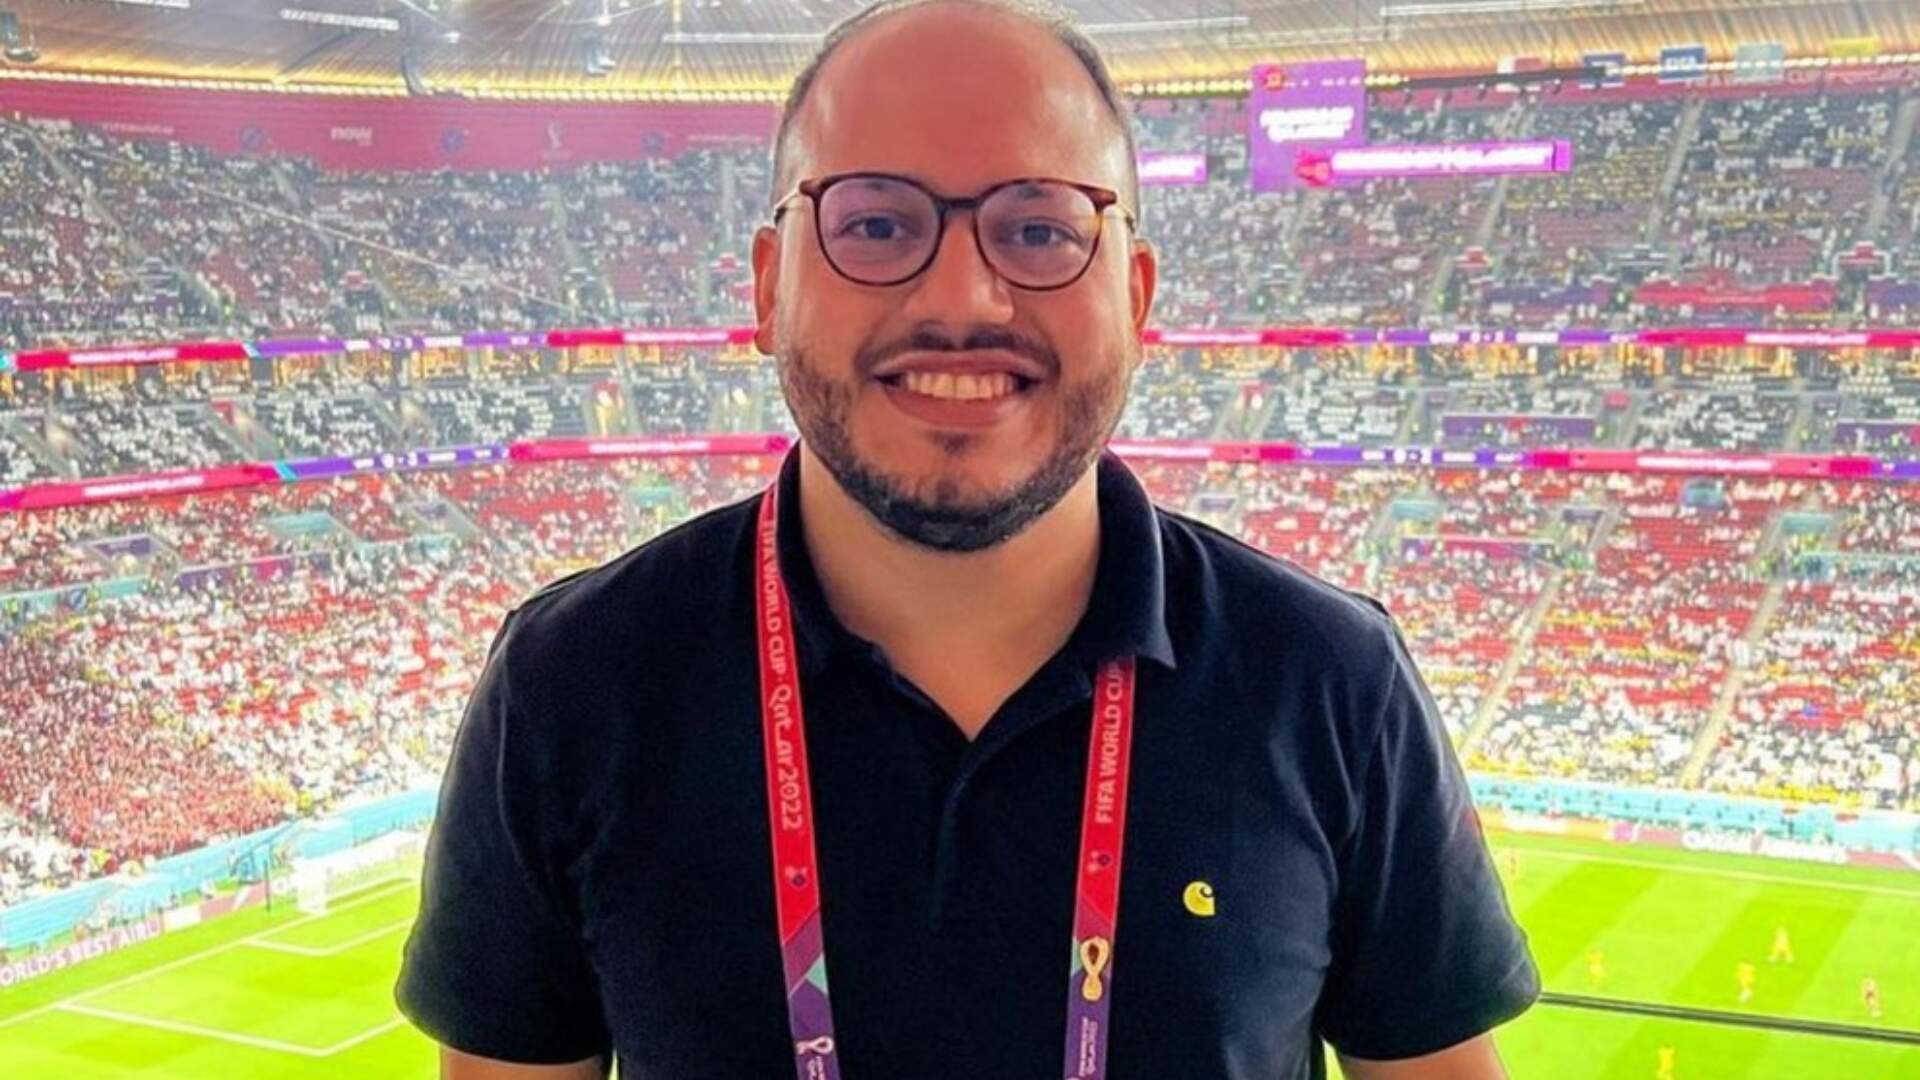 Copa do Mundo: Seguraças confundem bandeira de de Pernambuco com arco-íris LGBT e agridem jornalista